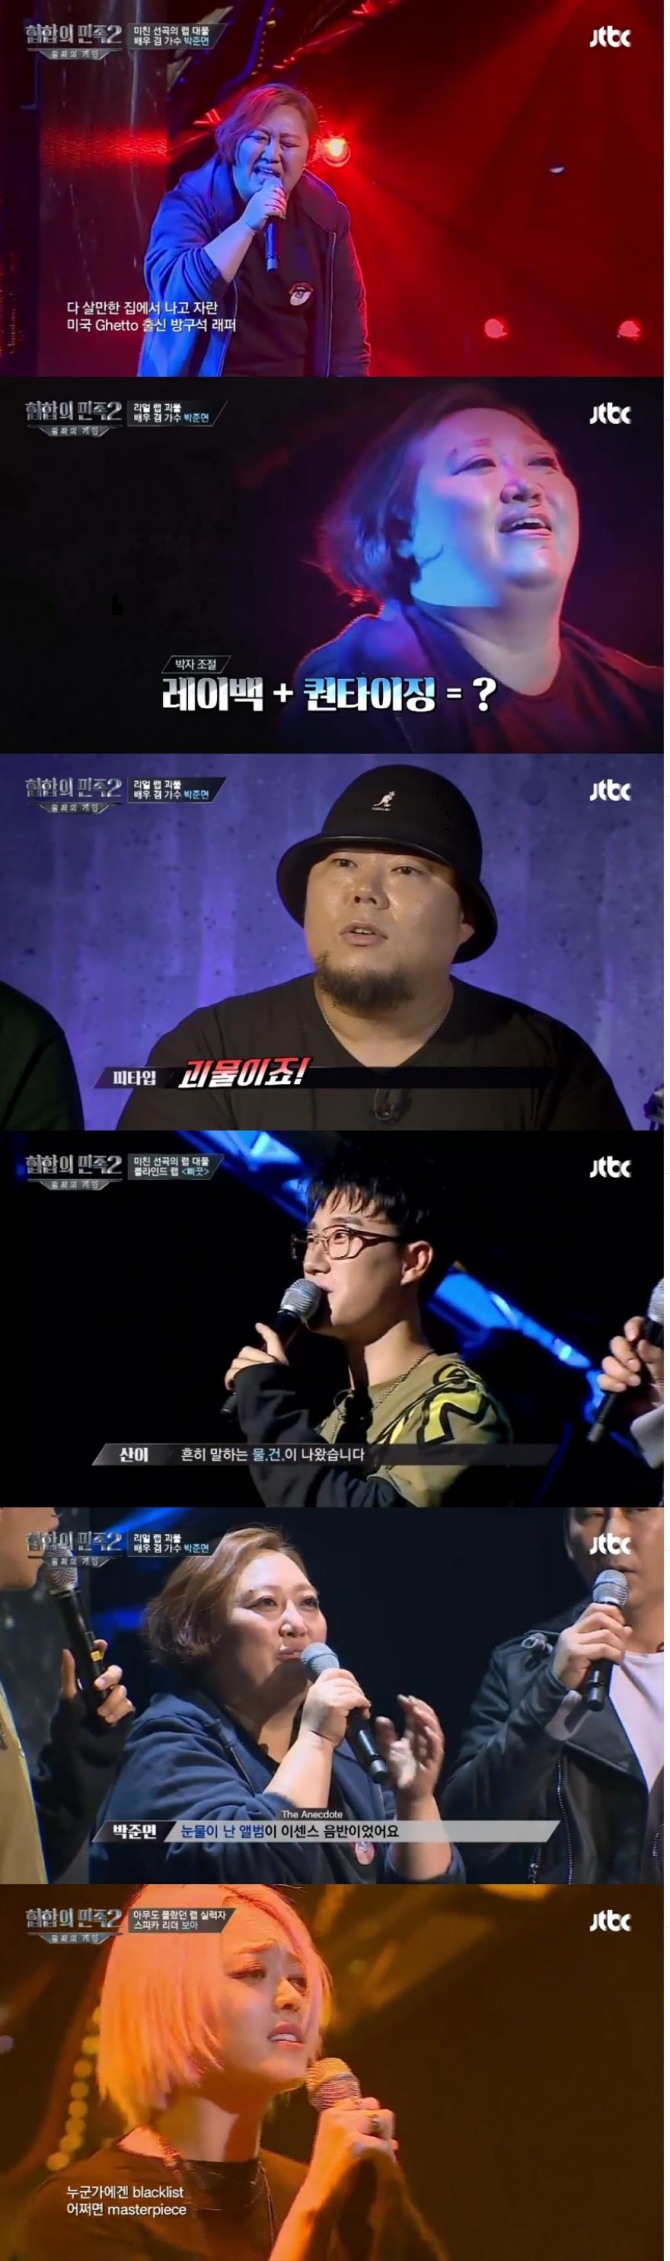 15일 방송된 JTBC '힙합의 민족2'에서는 배우 겸 가수 박준면이 괴물래퍼라는 찬사를 받았다./사진=JTBC 방송 캡처